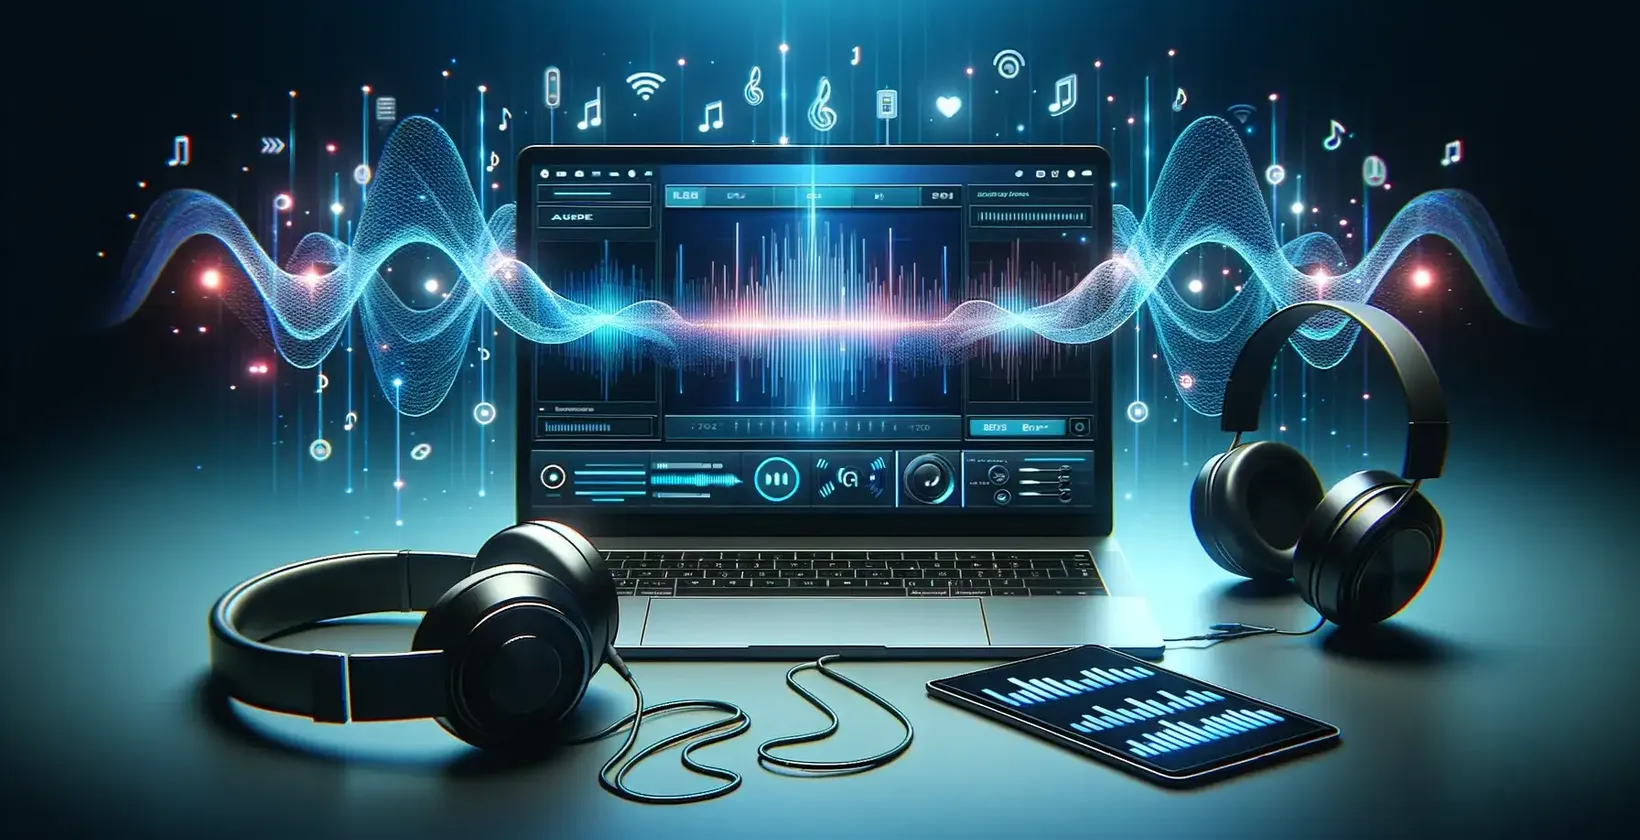 كمبيوتر محمول وسماعات رأس توفر الصوت لنسخ اقتباسات الفيديو مع الموسيقى والمؤثرات الصوتية.